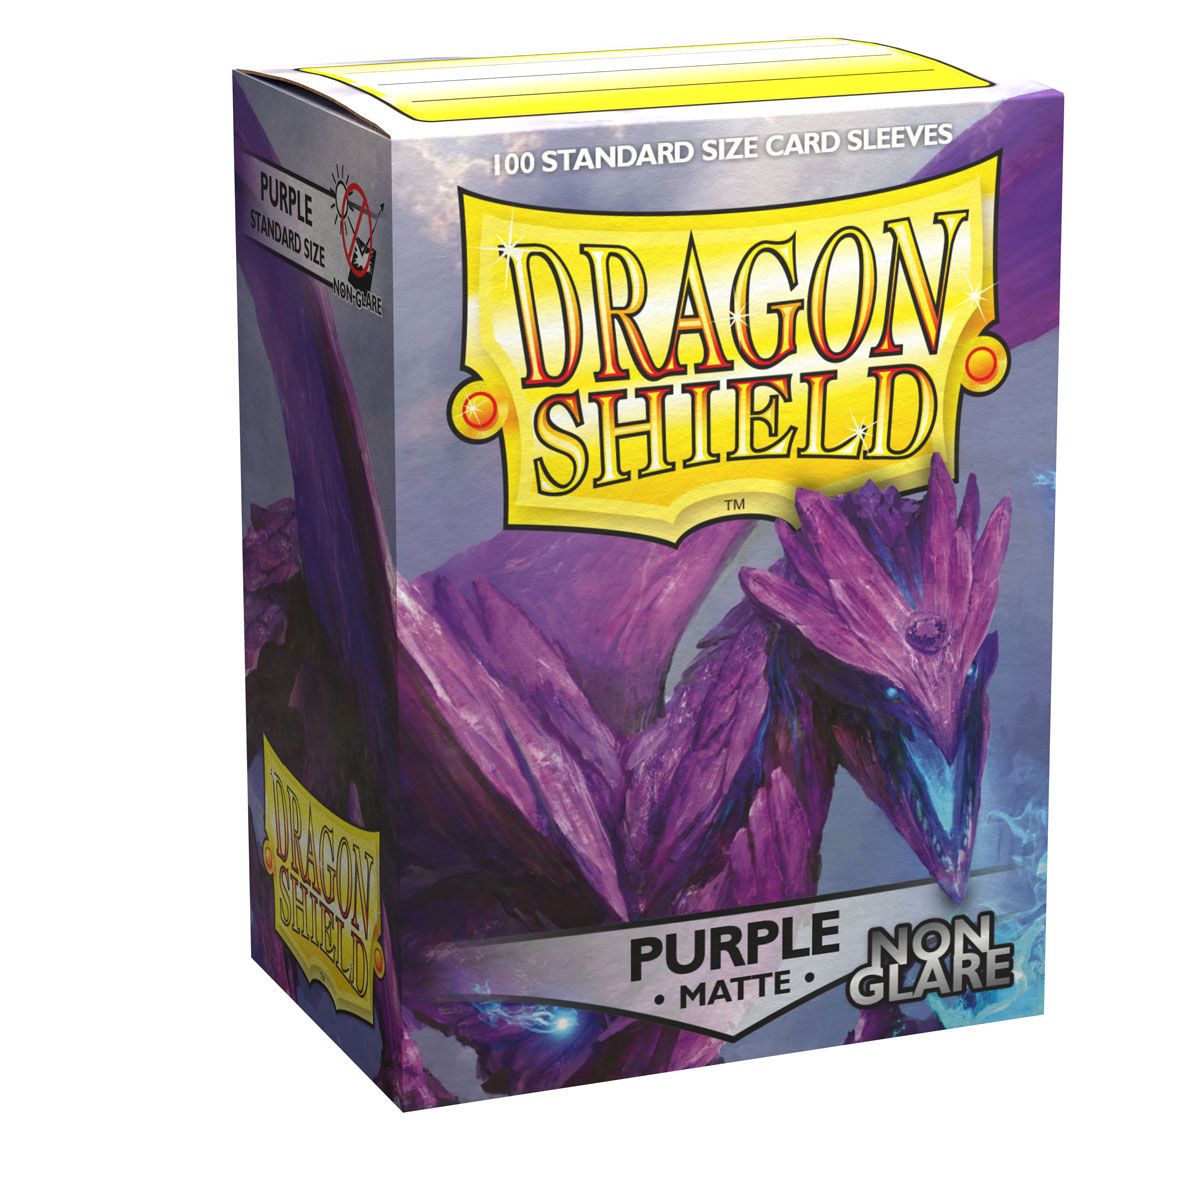 Dragon Shield - Standard - Matte - Non Glare - Purple 100pcs